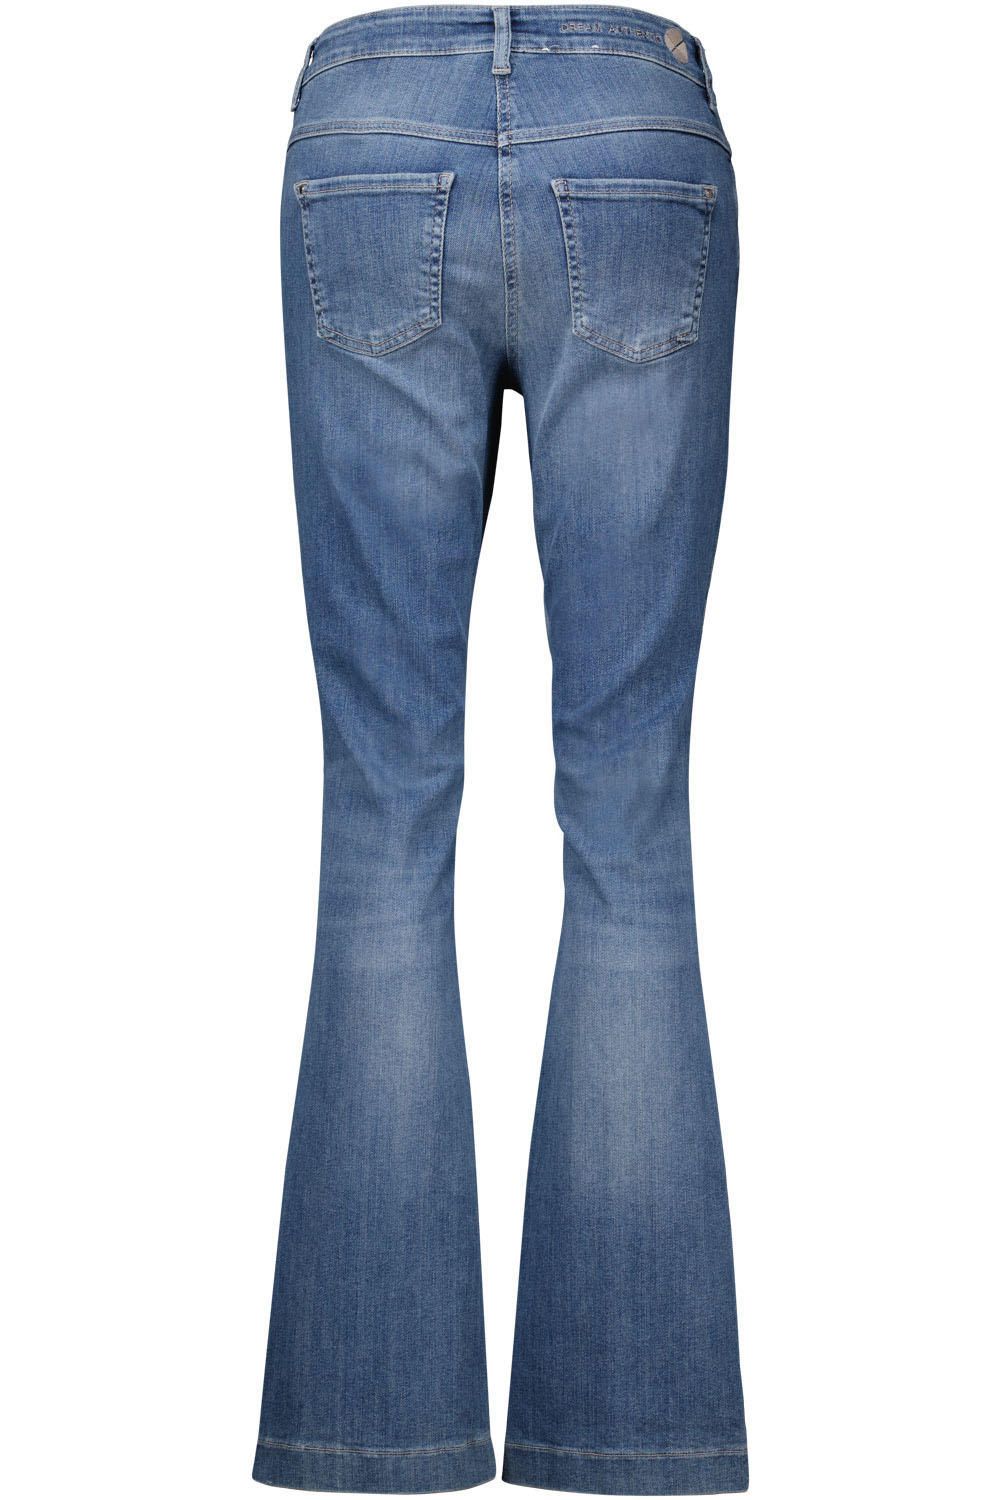 Mac Jeans Spijkerbroek Dream Boot Authentic Blauw 